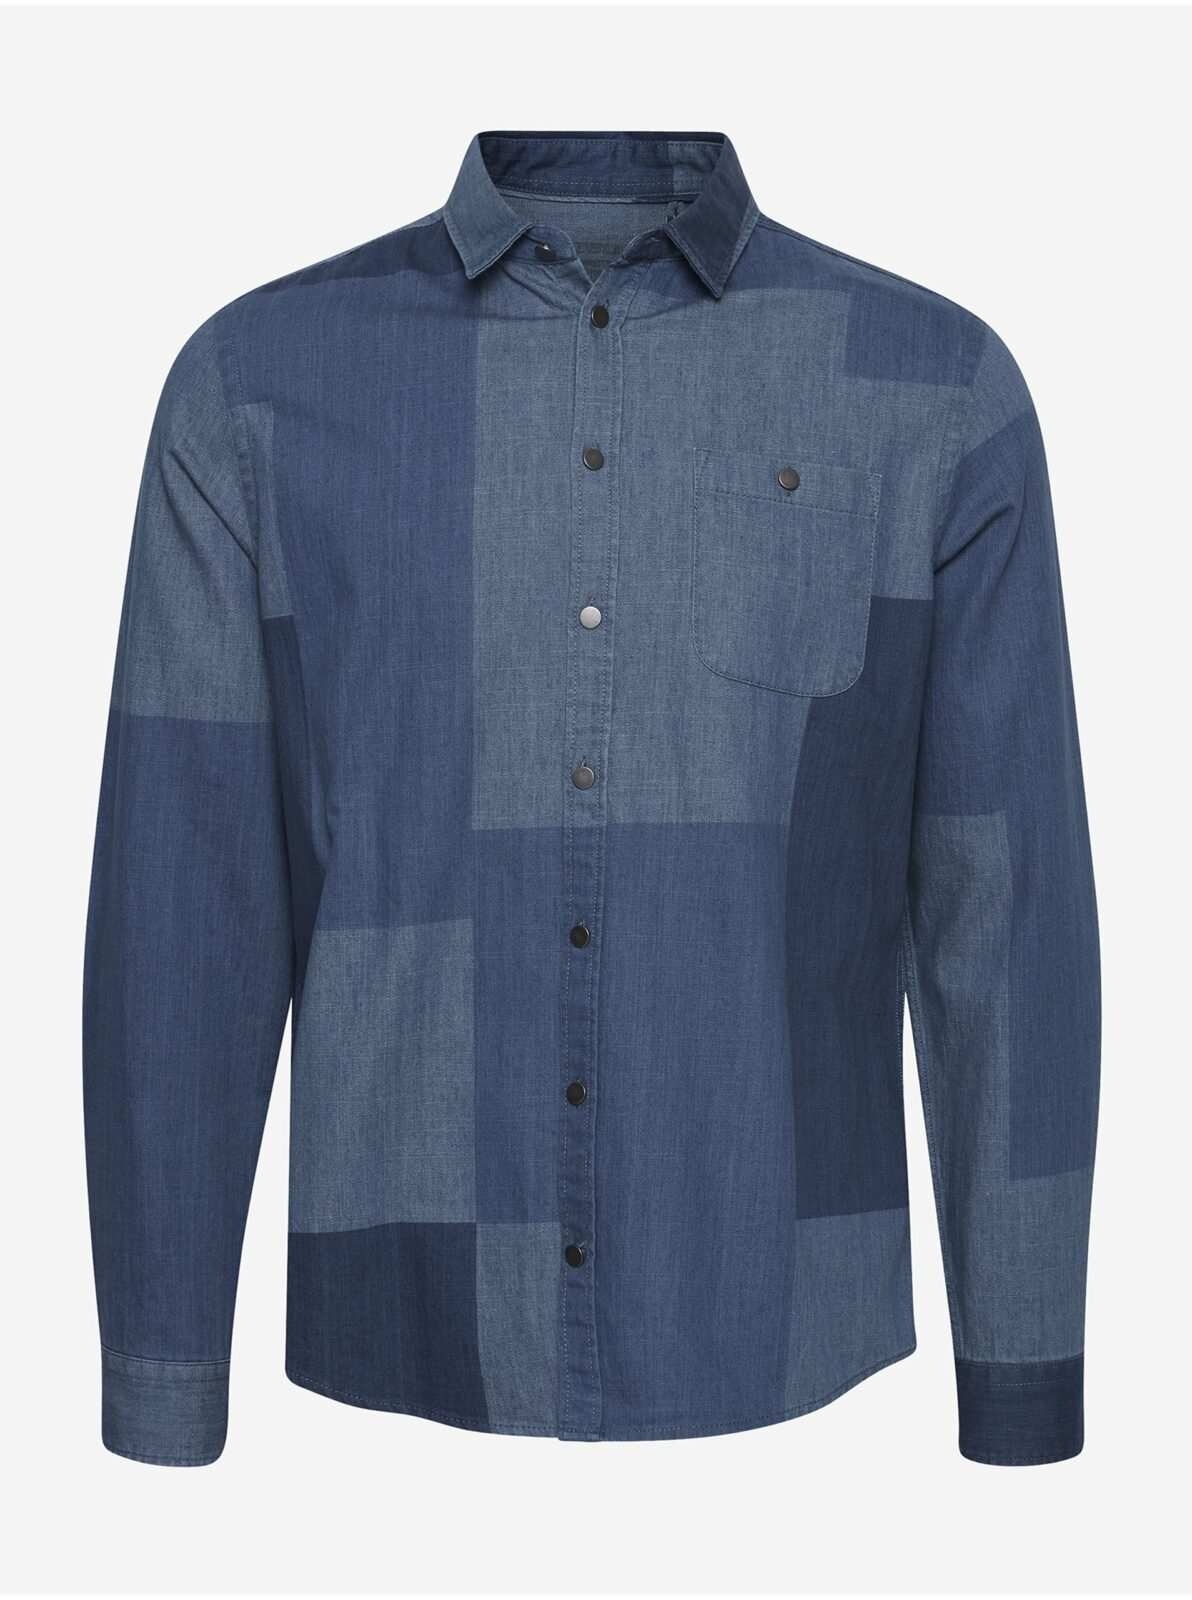 Modrá džínová vzorovaná košile Blend